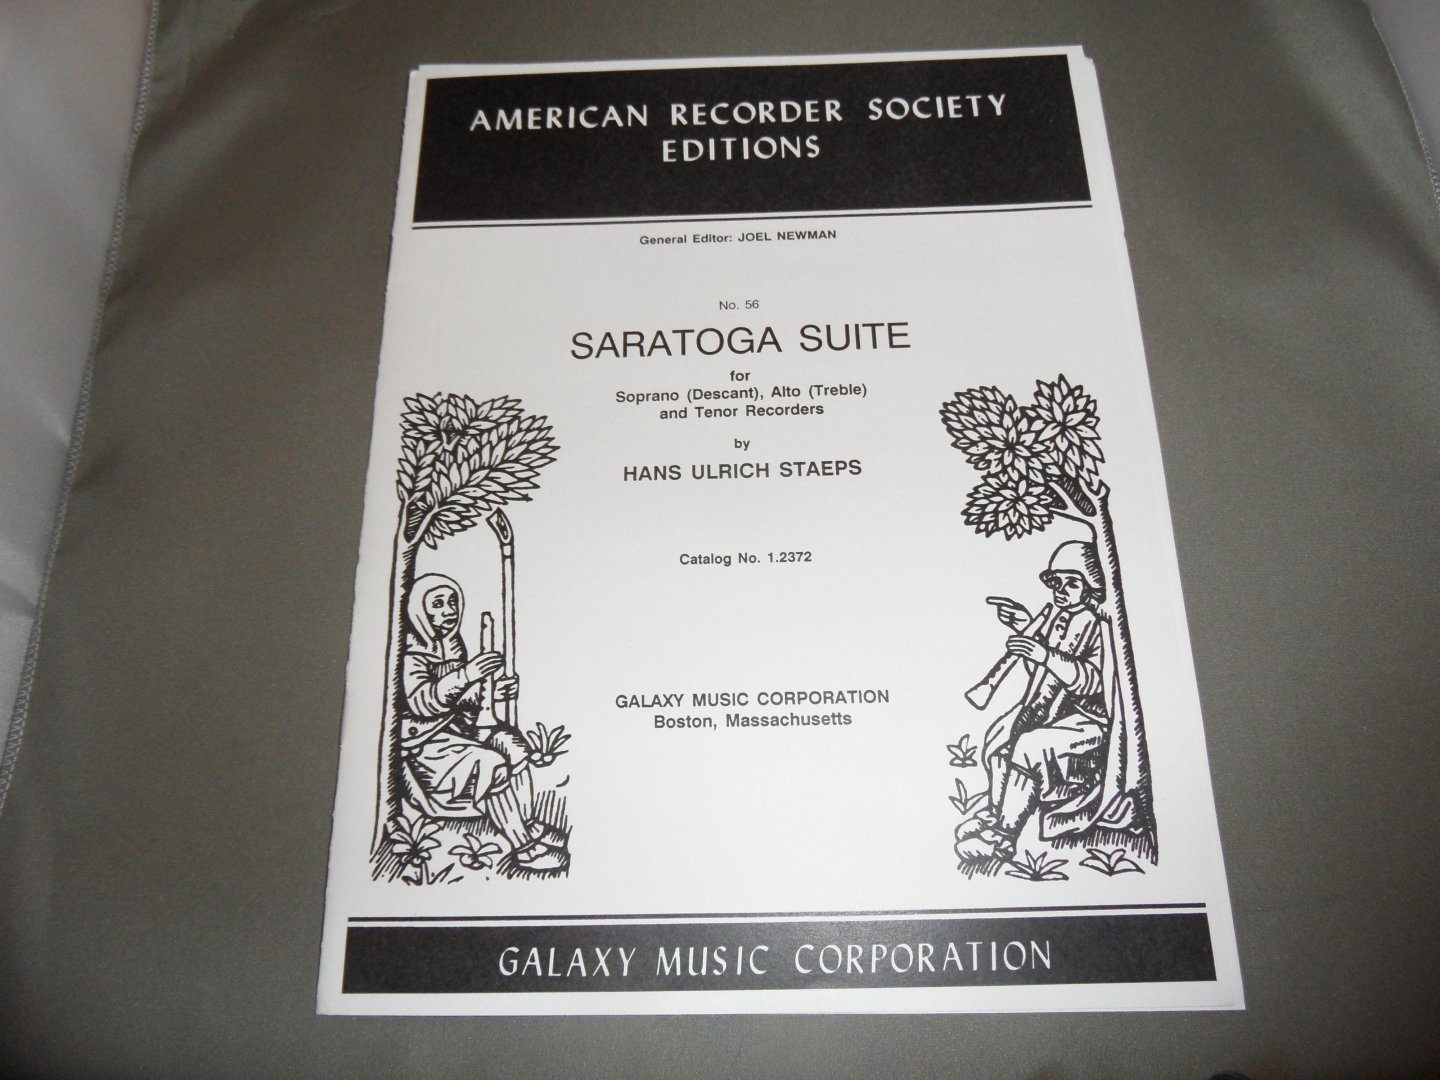 Staeps, Hans Ulrich - Saratoga Suite no. 56 for Soprano (Descant), Alto (Treble) and Tenor Recorders